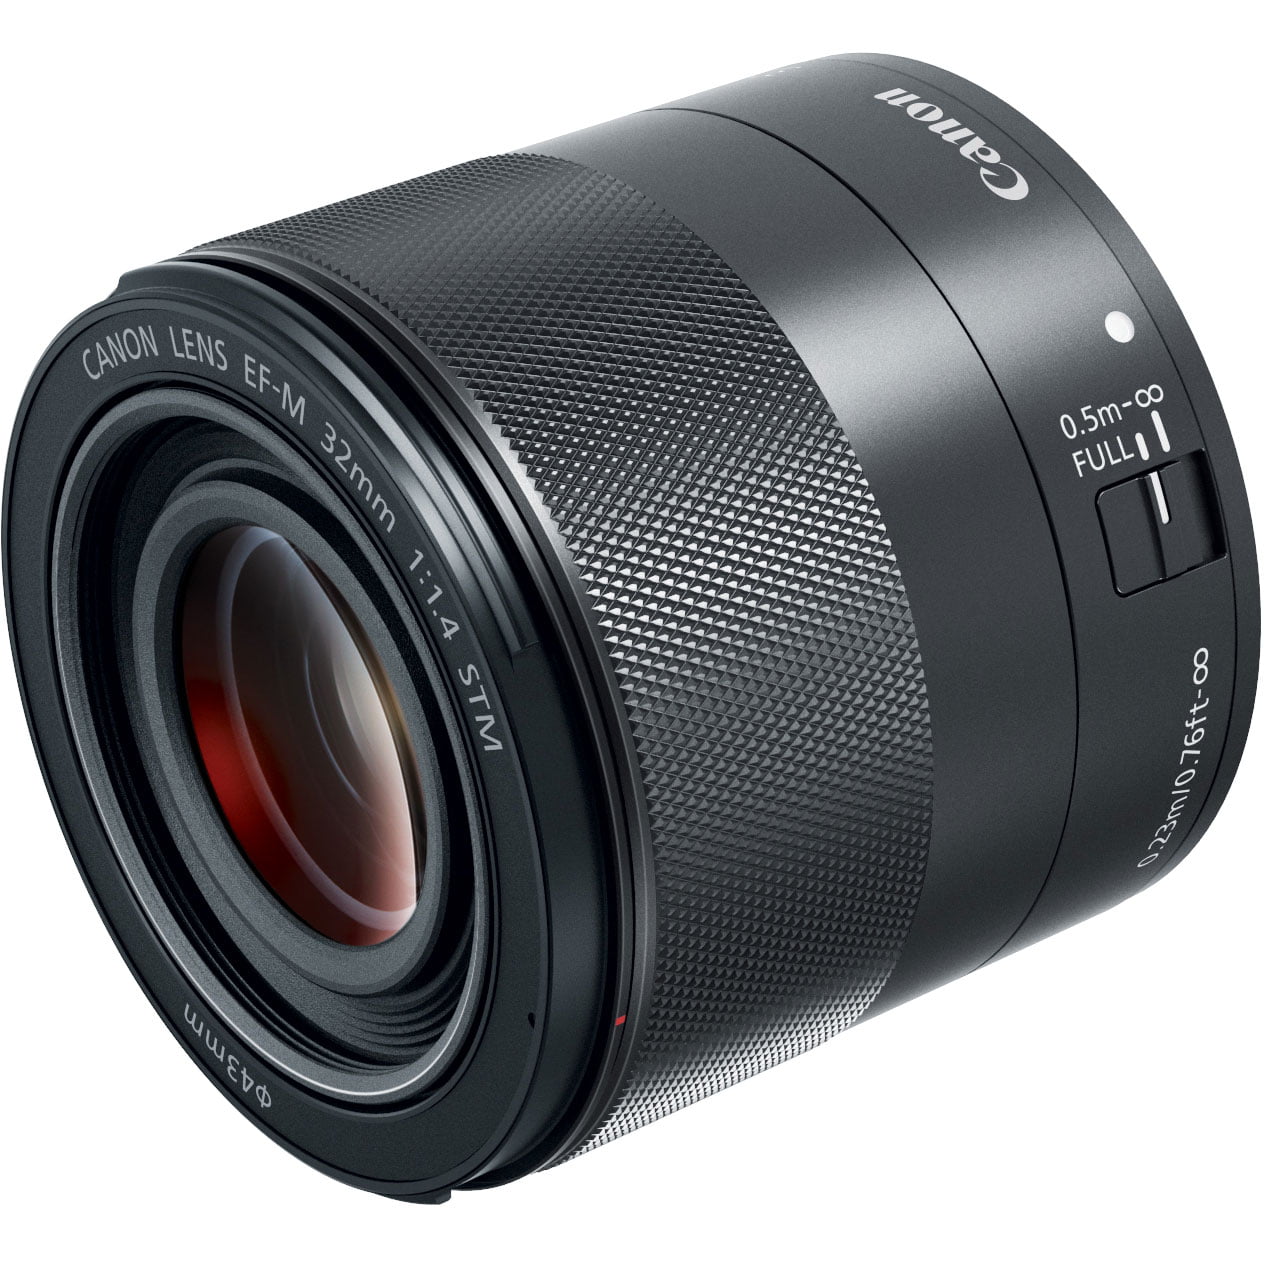 Canon EF-M 32mm f/1.4 STM Lens (2439C002)